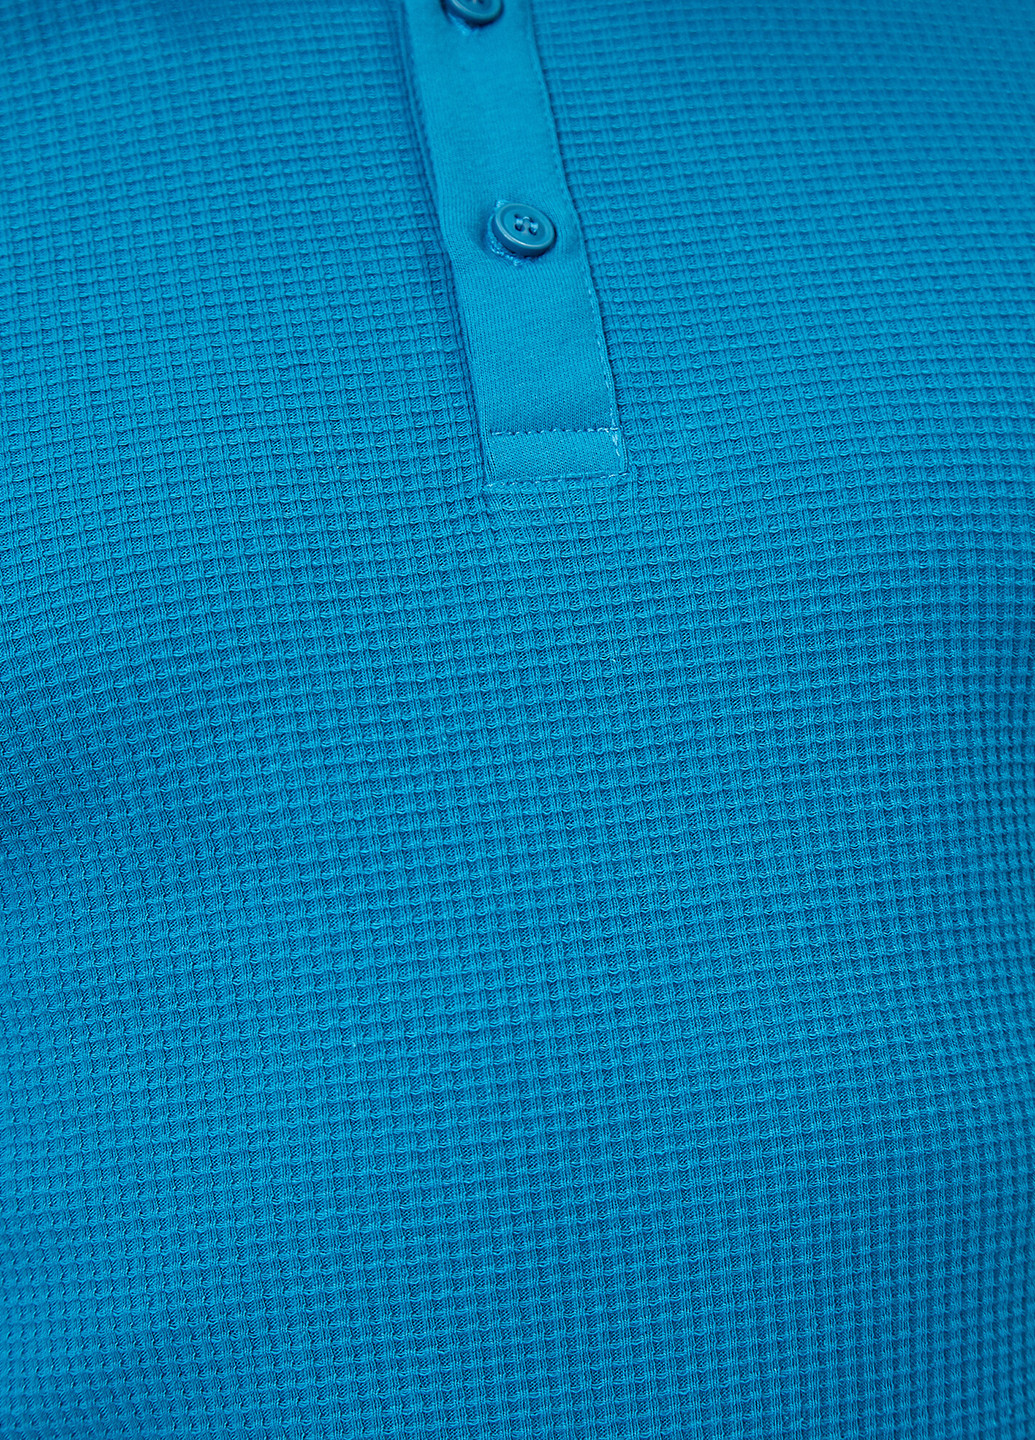 Синяя футболка-поло для мужчин KOTON однотонная